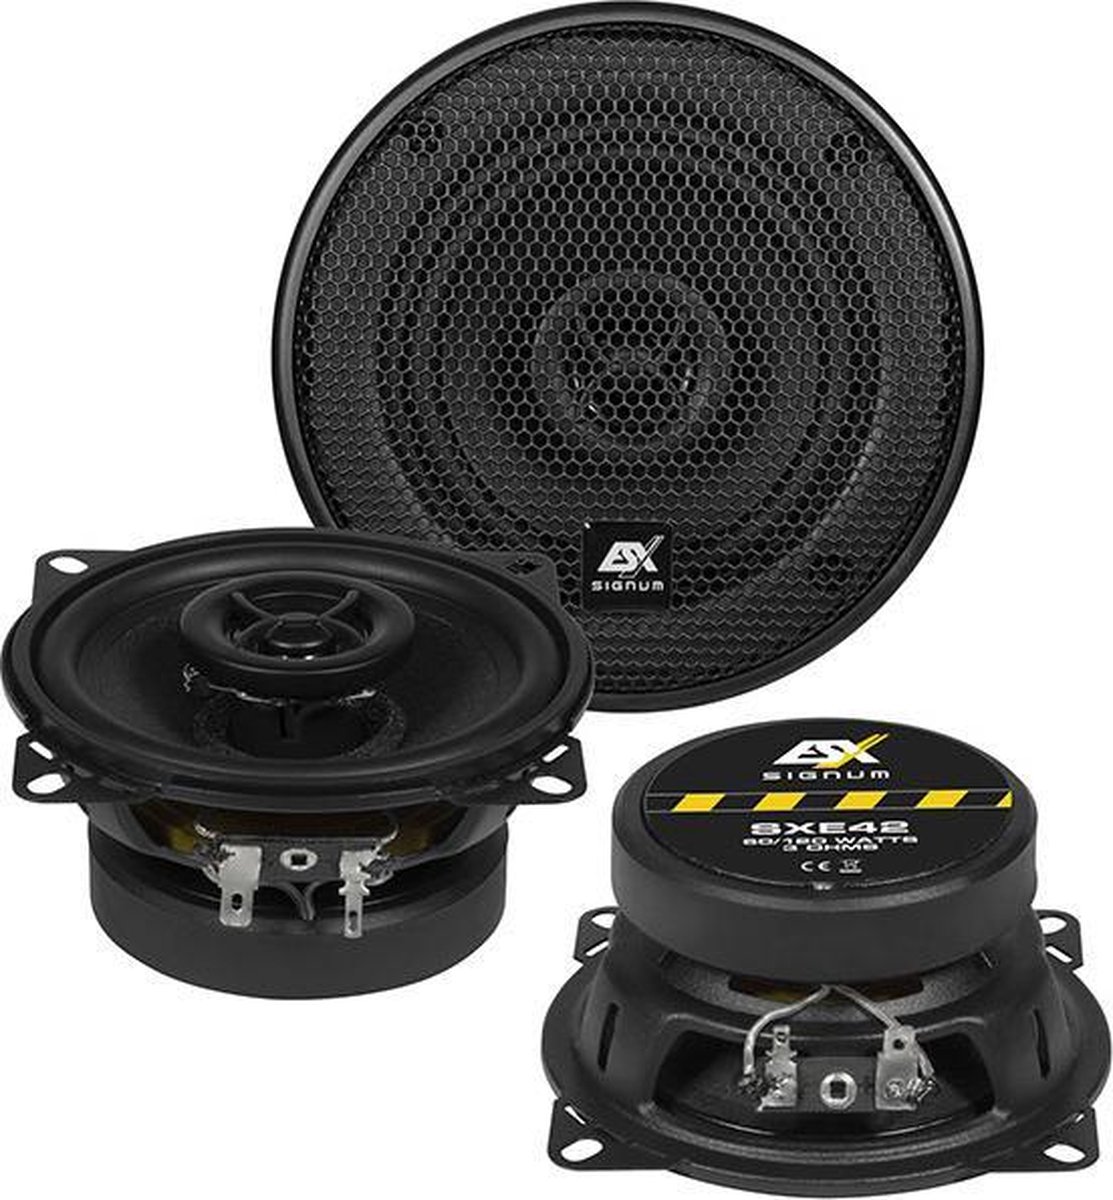 ESX SXE42 10cm speakers flat speakers